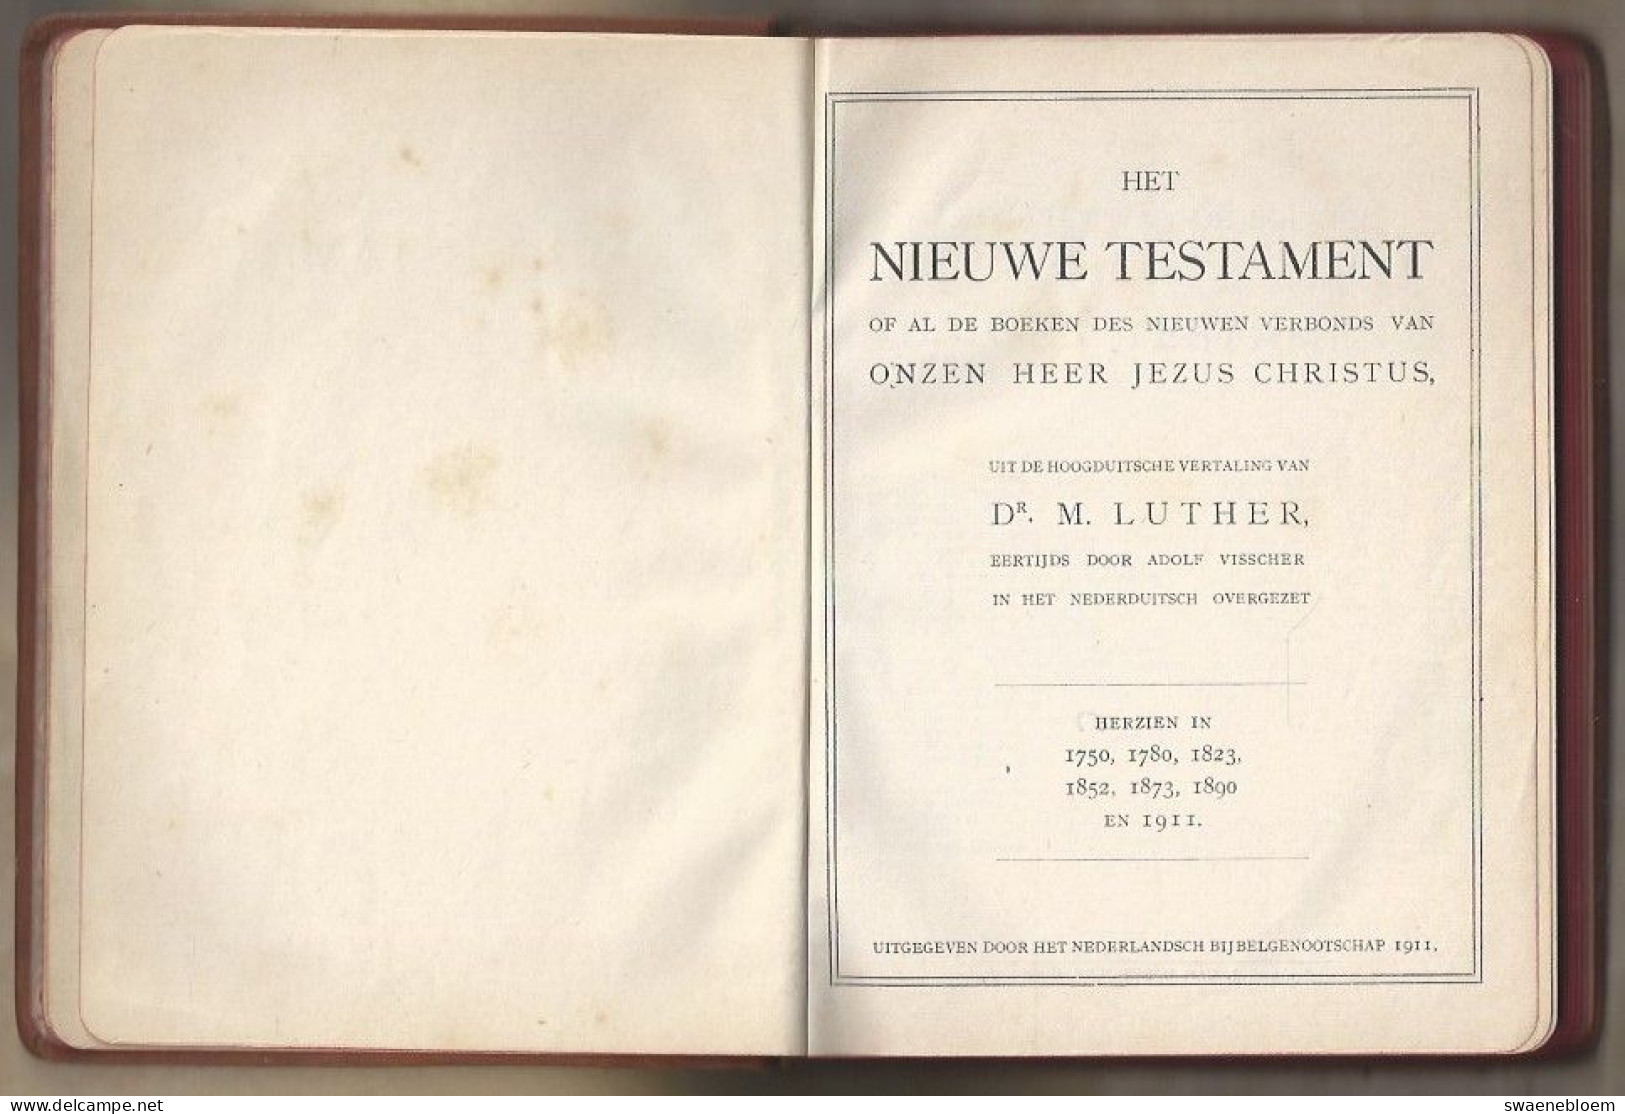 HET NIEUWE TESTAMENT OF AL DE BOEKEN DES NIEUWEN VERBONDS VAN ONZE HEER JEZUS CHRISTUS 1911. - Antique